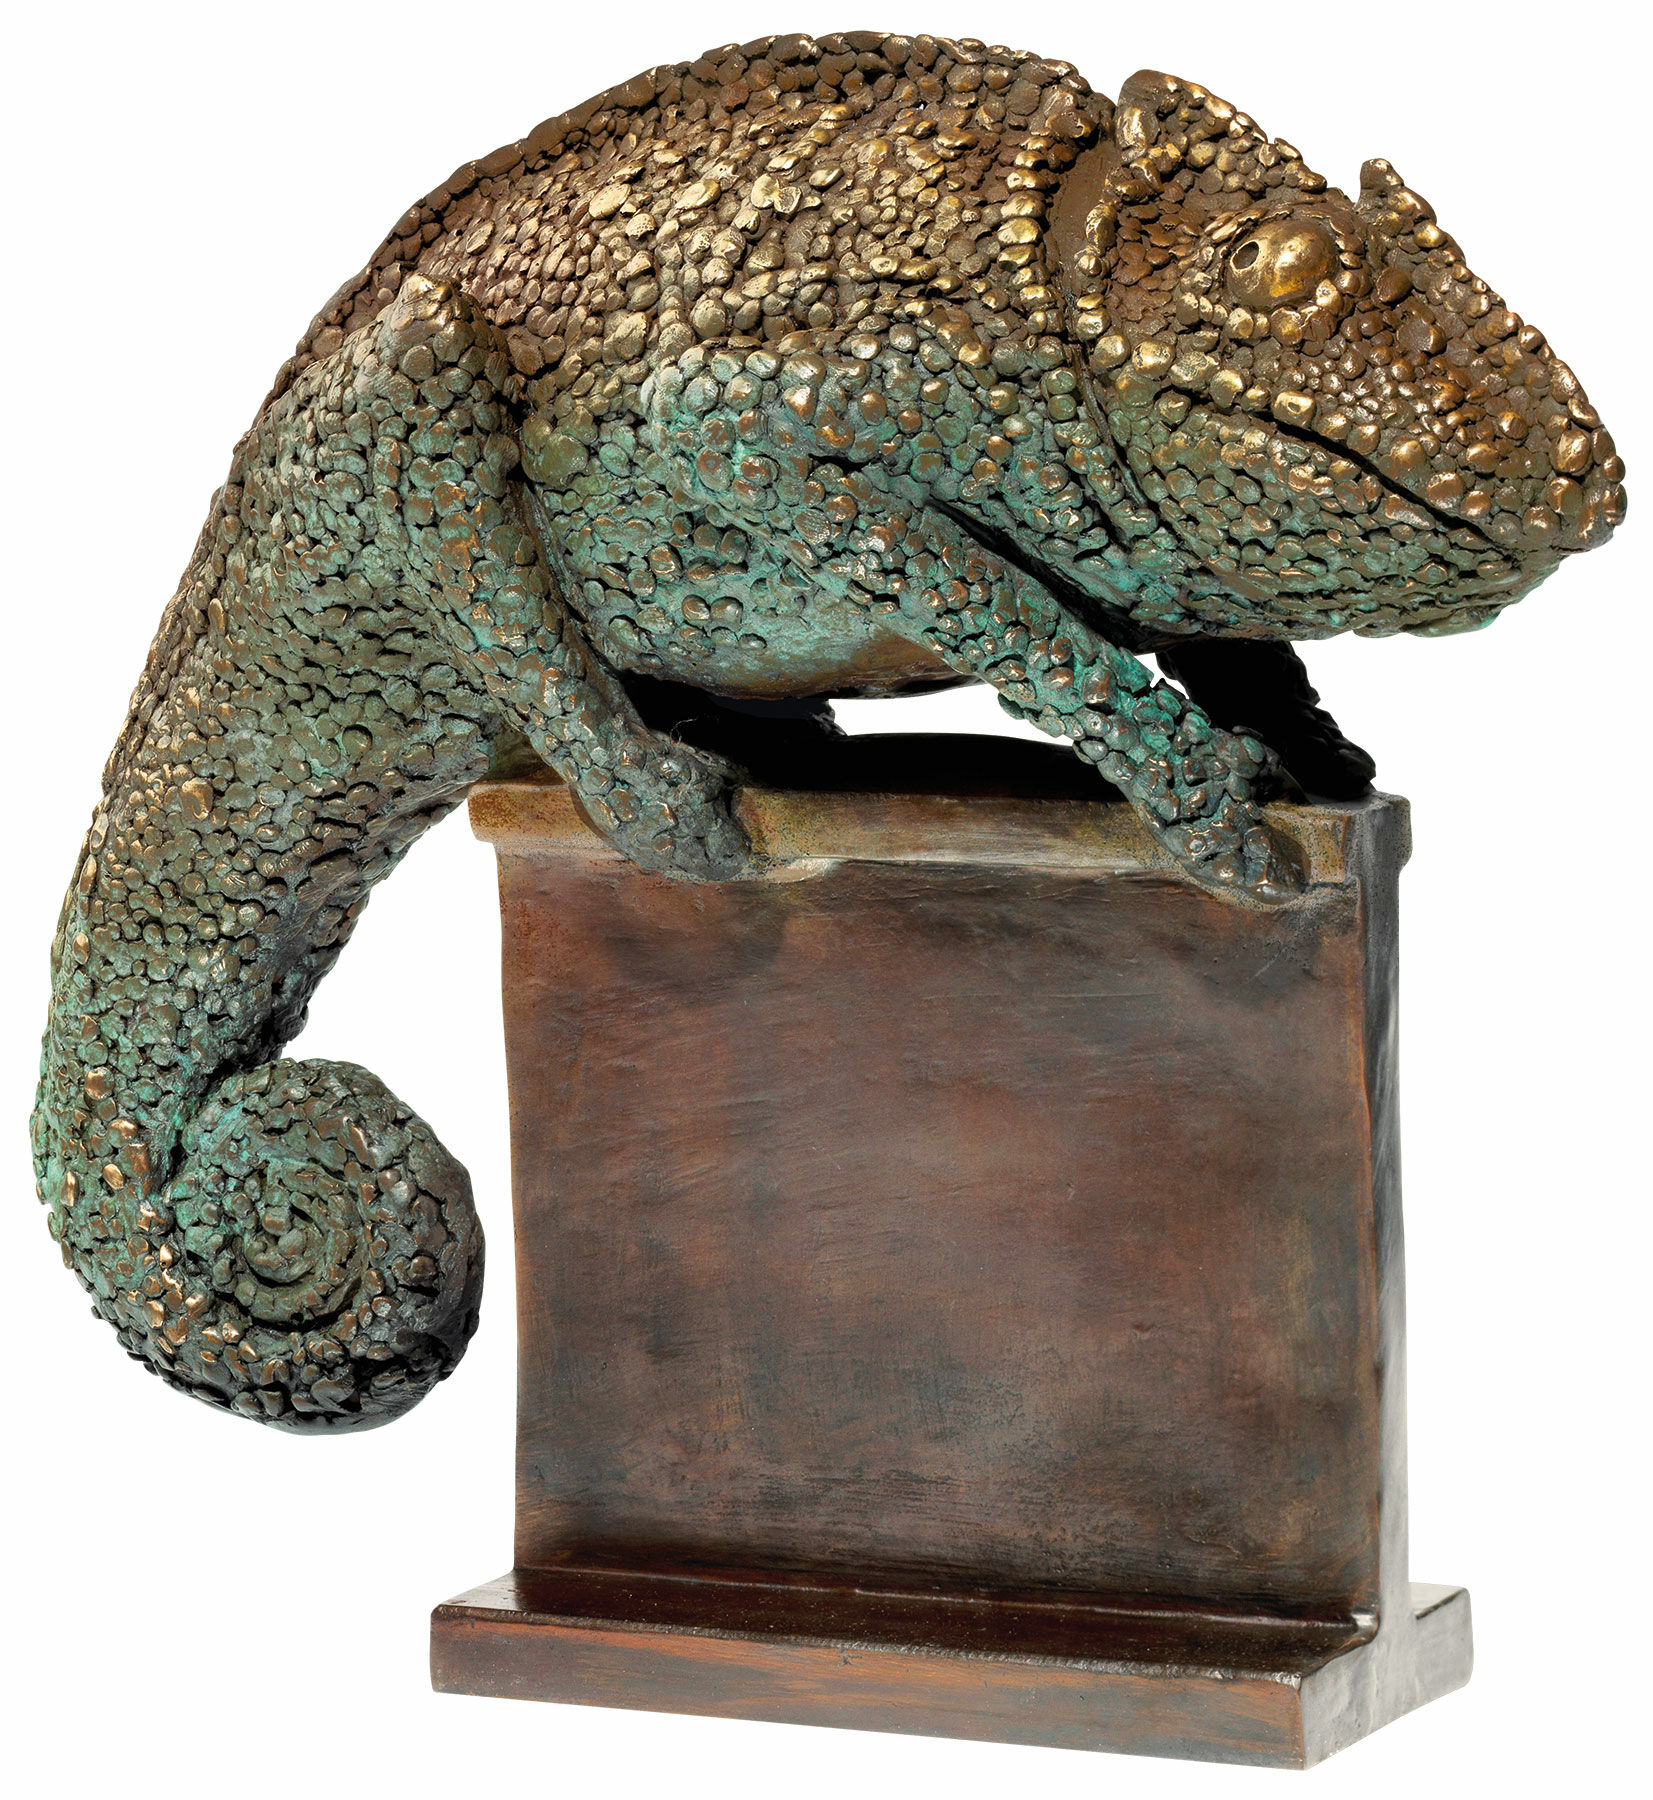 Sculpture "Chameleon", bronze by Bruno Bruni